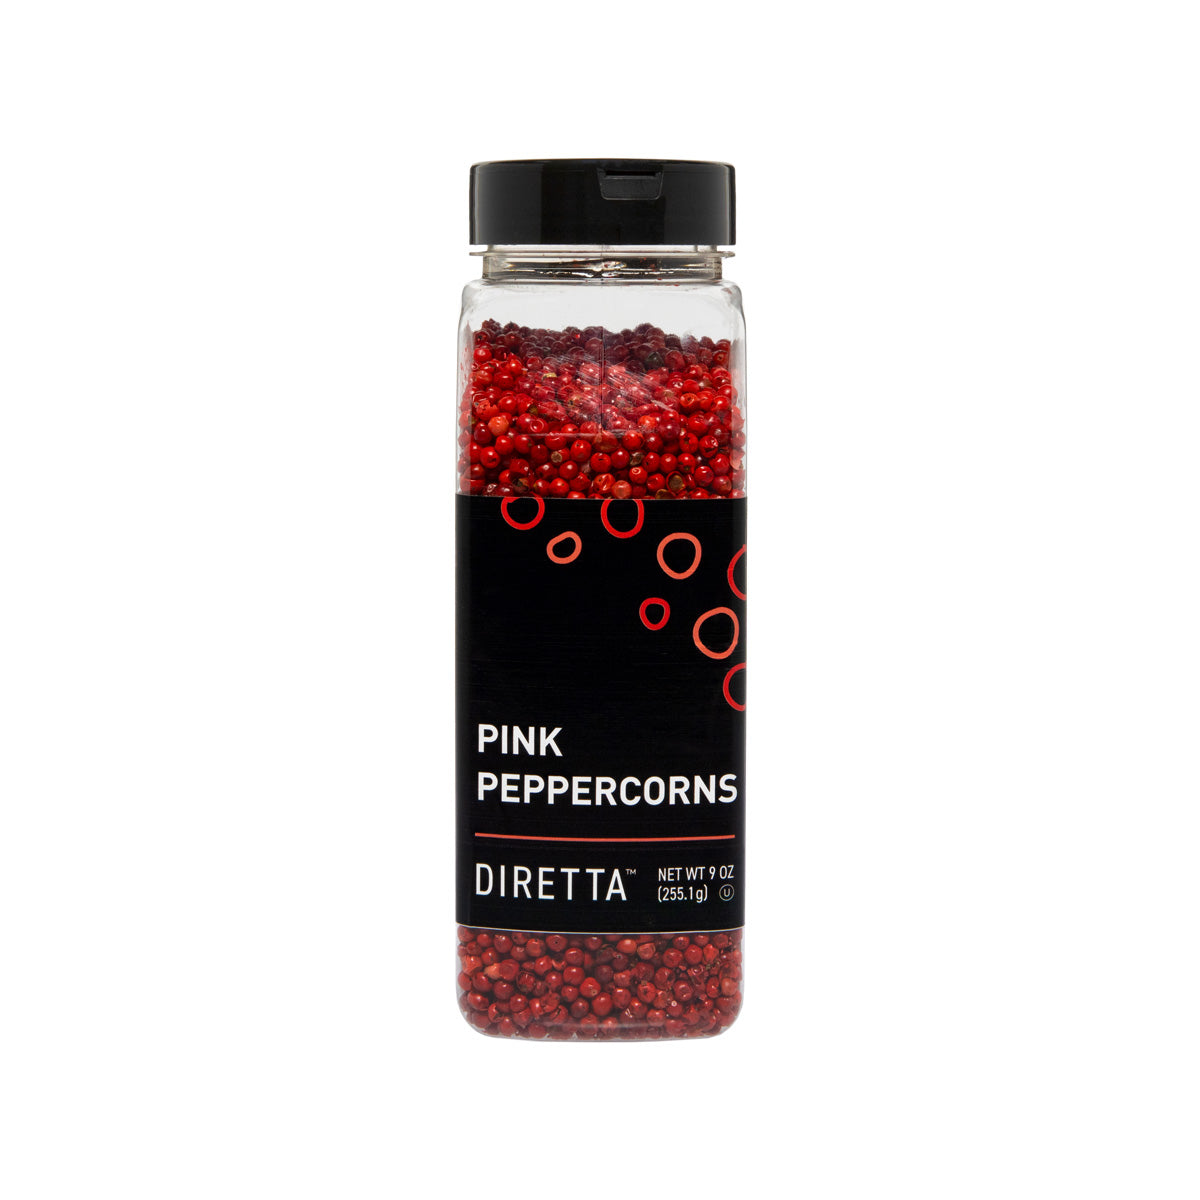 Diretta Whole Pink Peppercorns